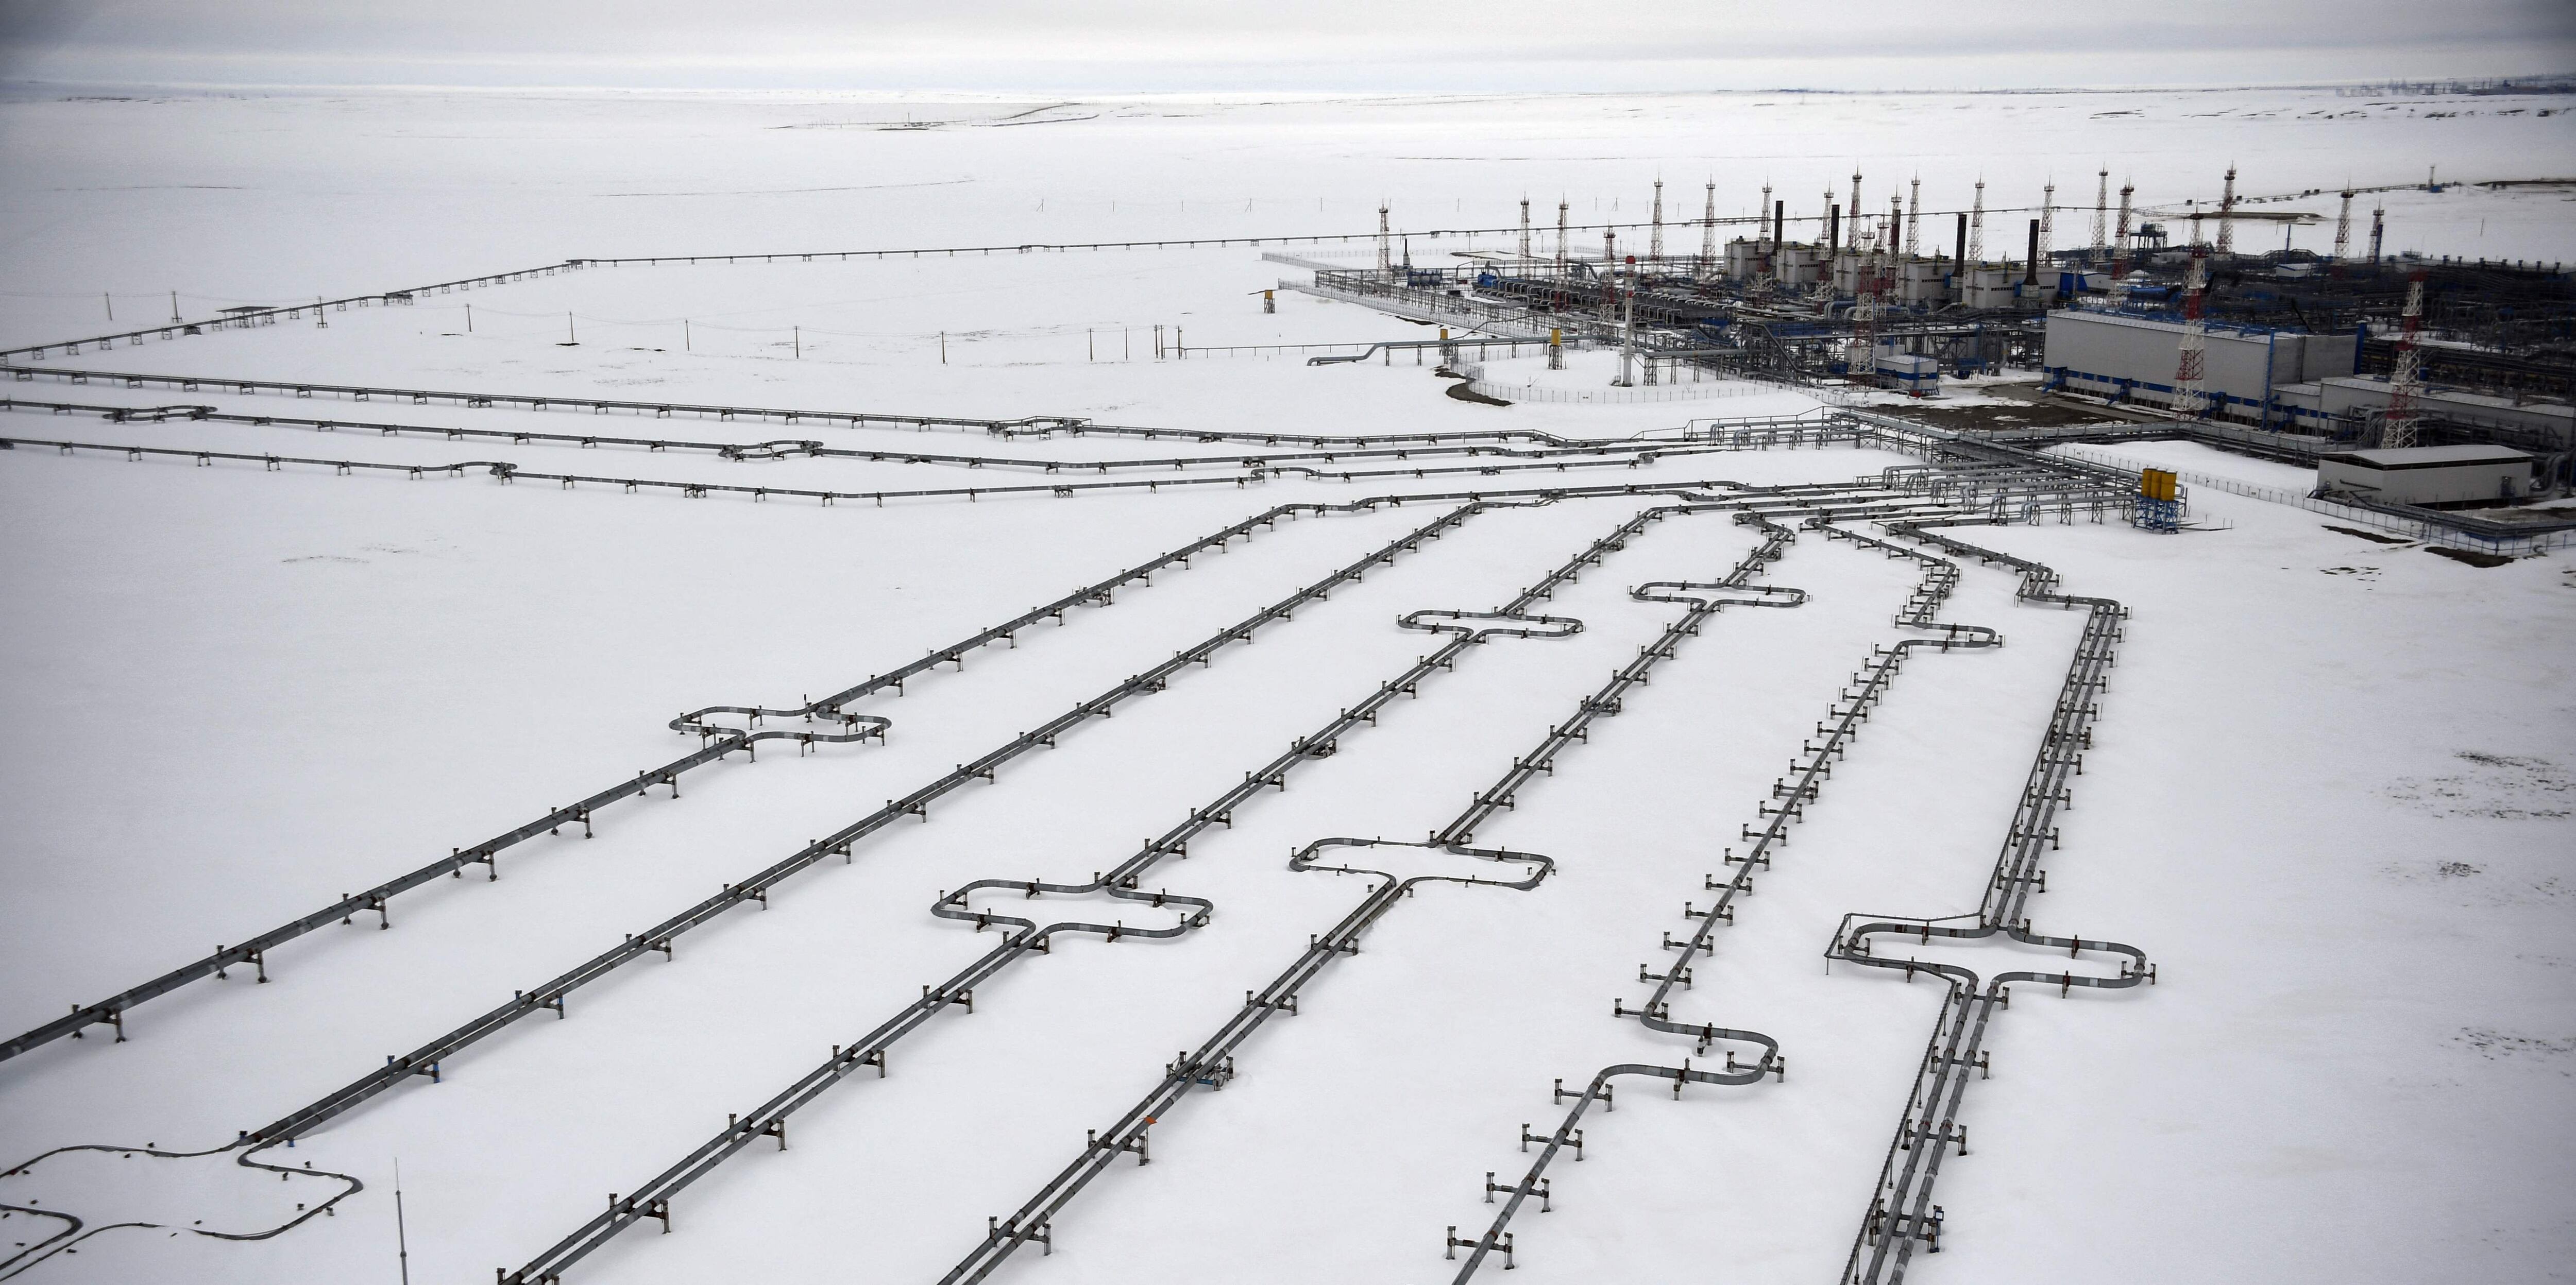 El gasoducto Nord Stream, con una capacidad, según Gazprom, de 167 millones de metros cúbicos diarios, conecta a Rusia con Alemania a través del mar Báltico.